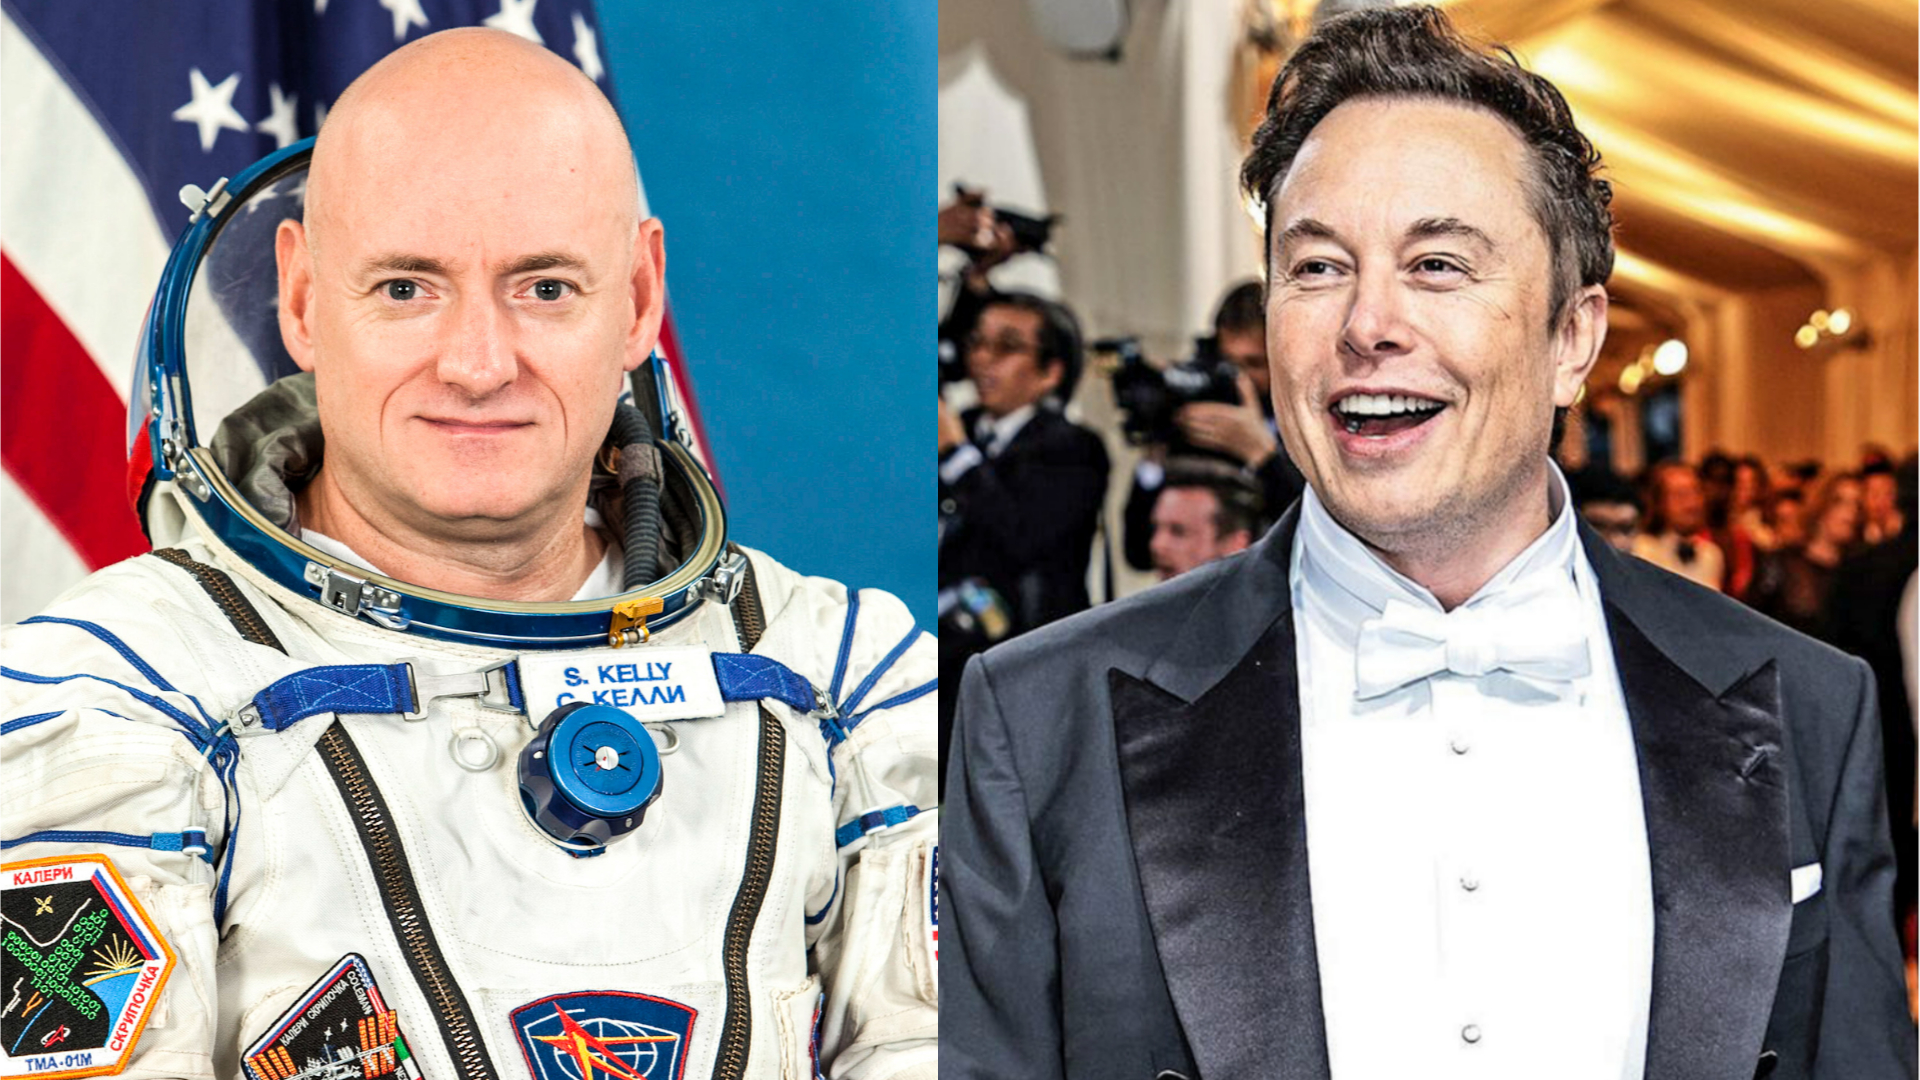 Elon Musk astronaut Scott Kelly spar on Twitter over pronoun use